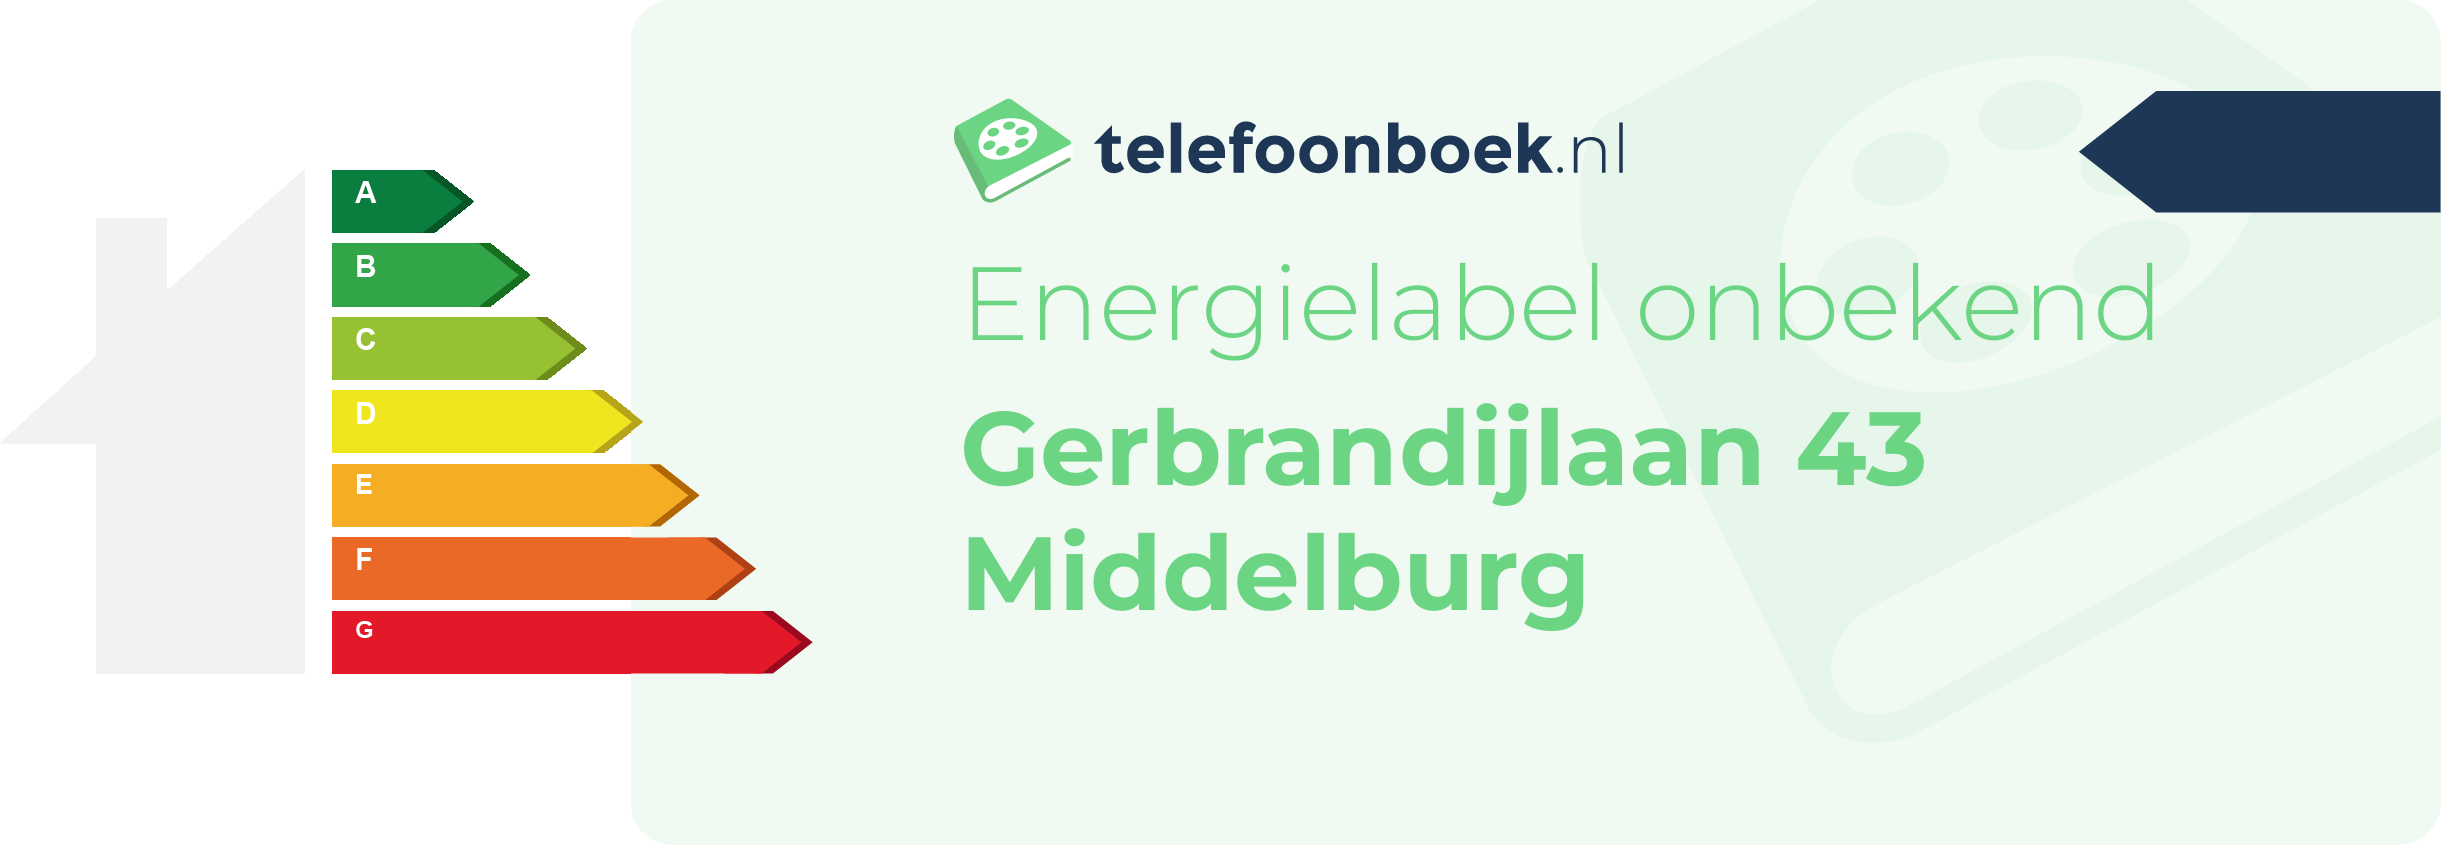 Energielabel Gerbrandijlaan 43 Middelburg